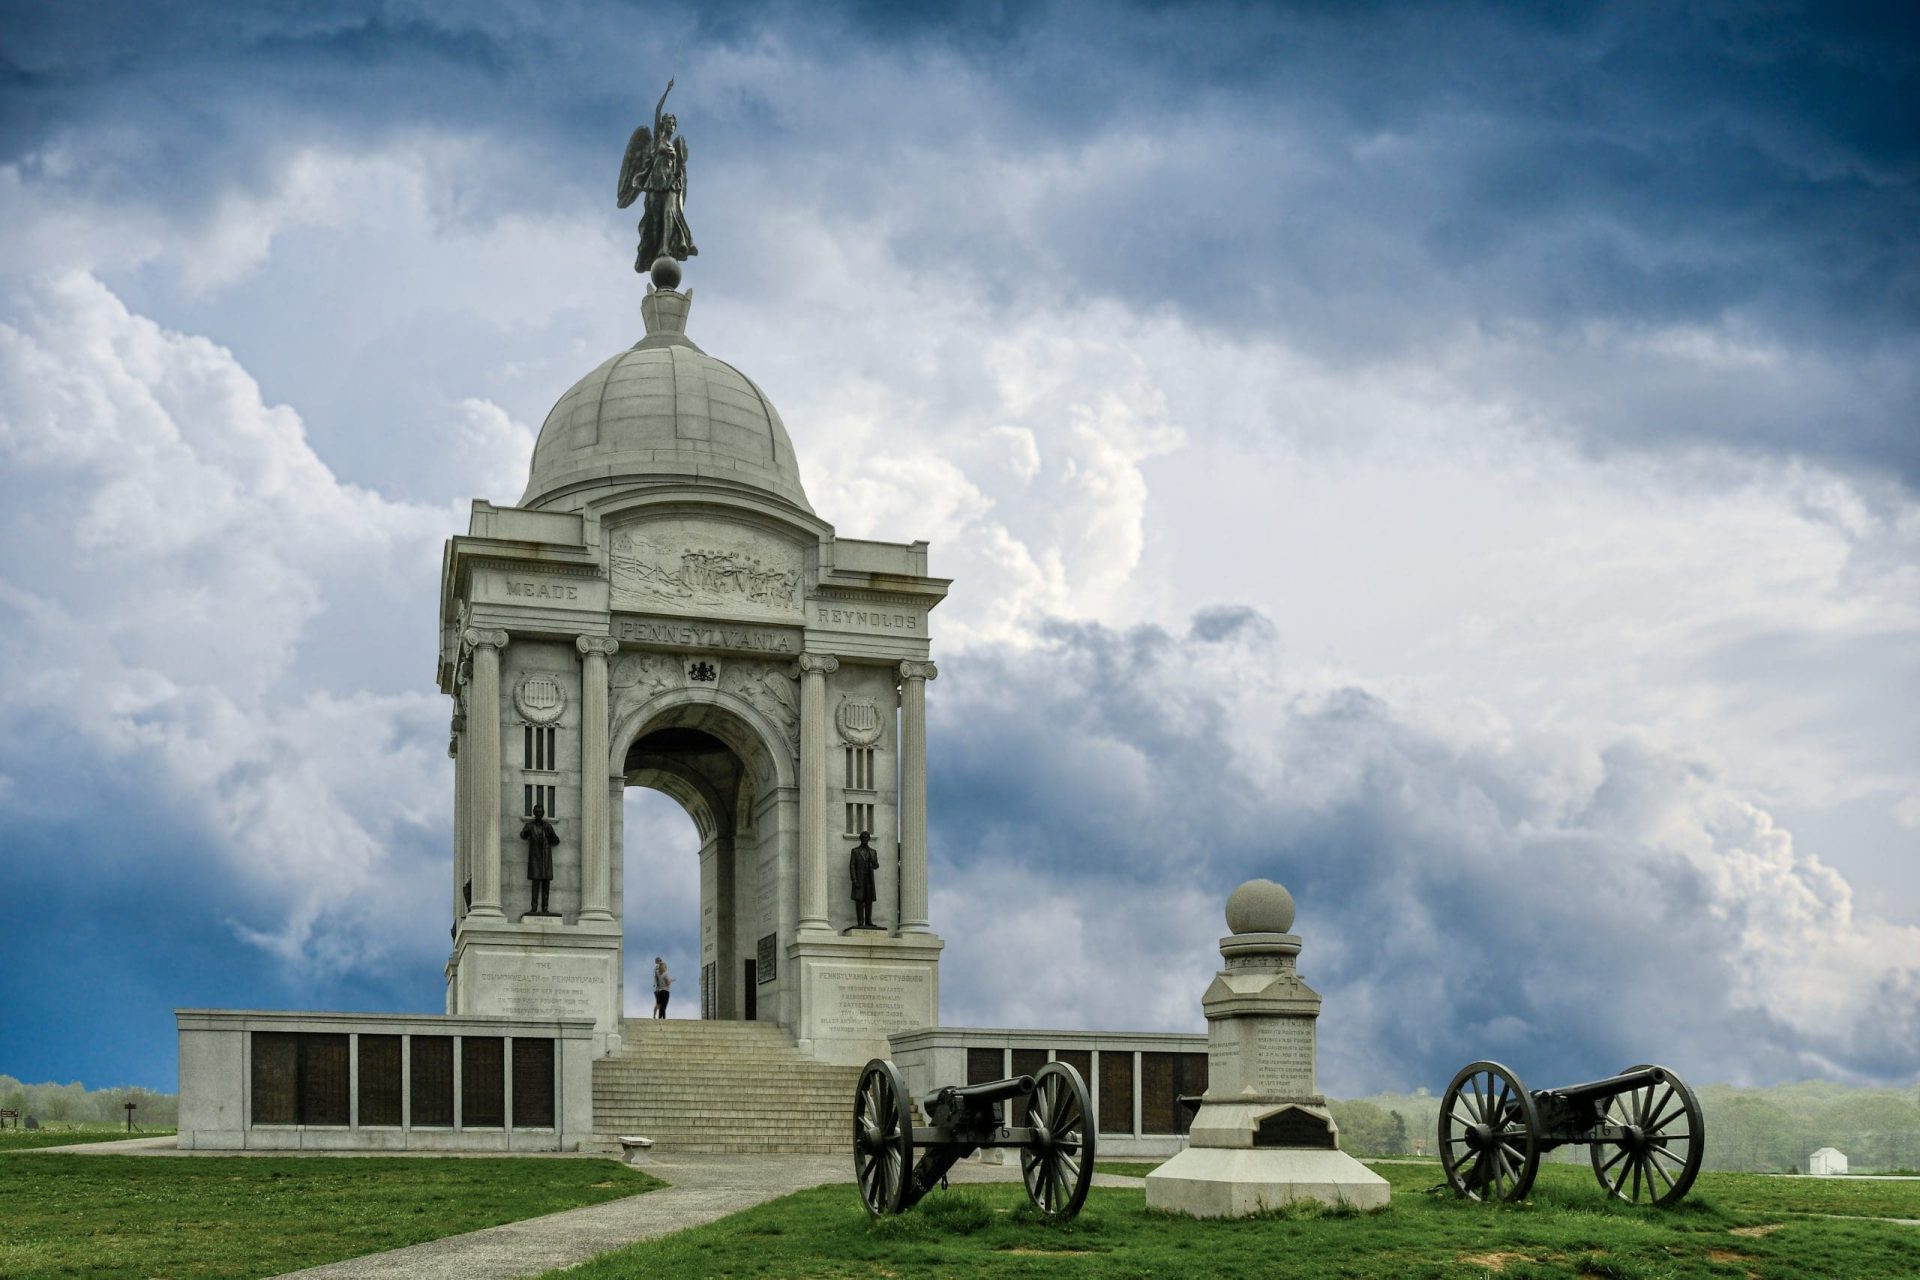 Is Gettysburg worth visiting?